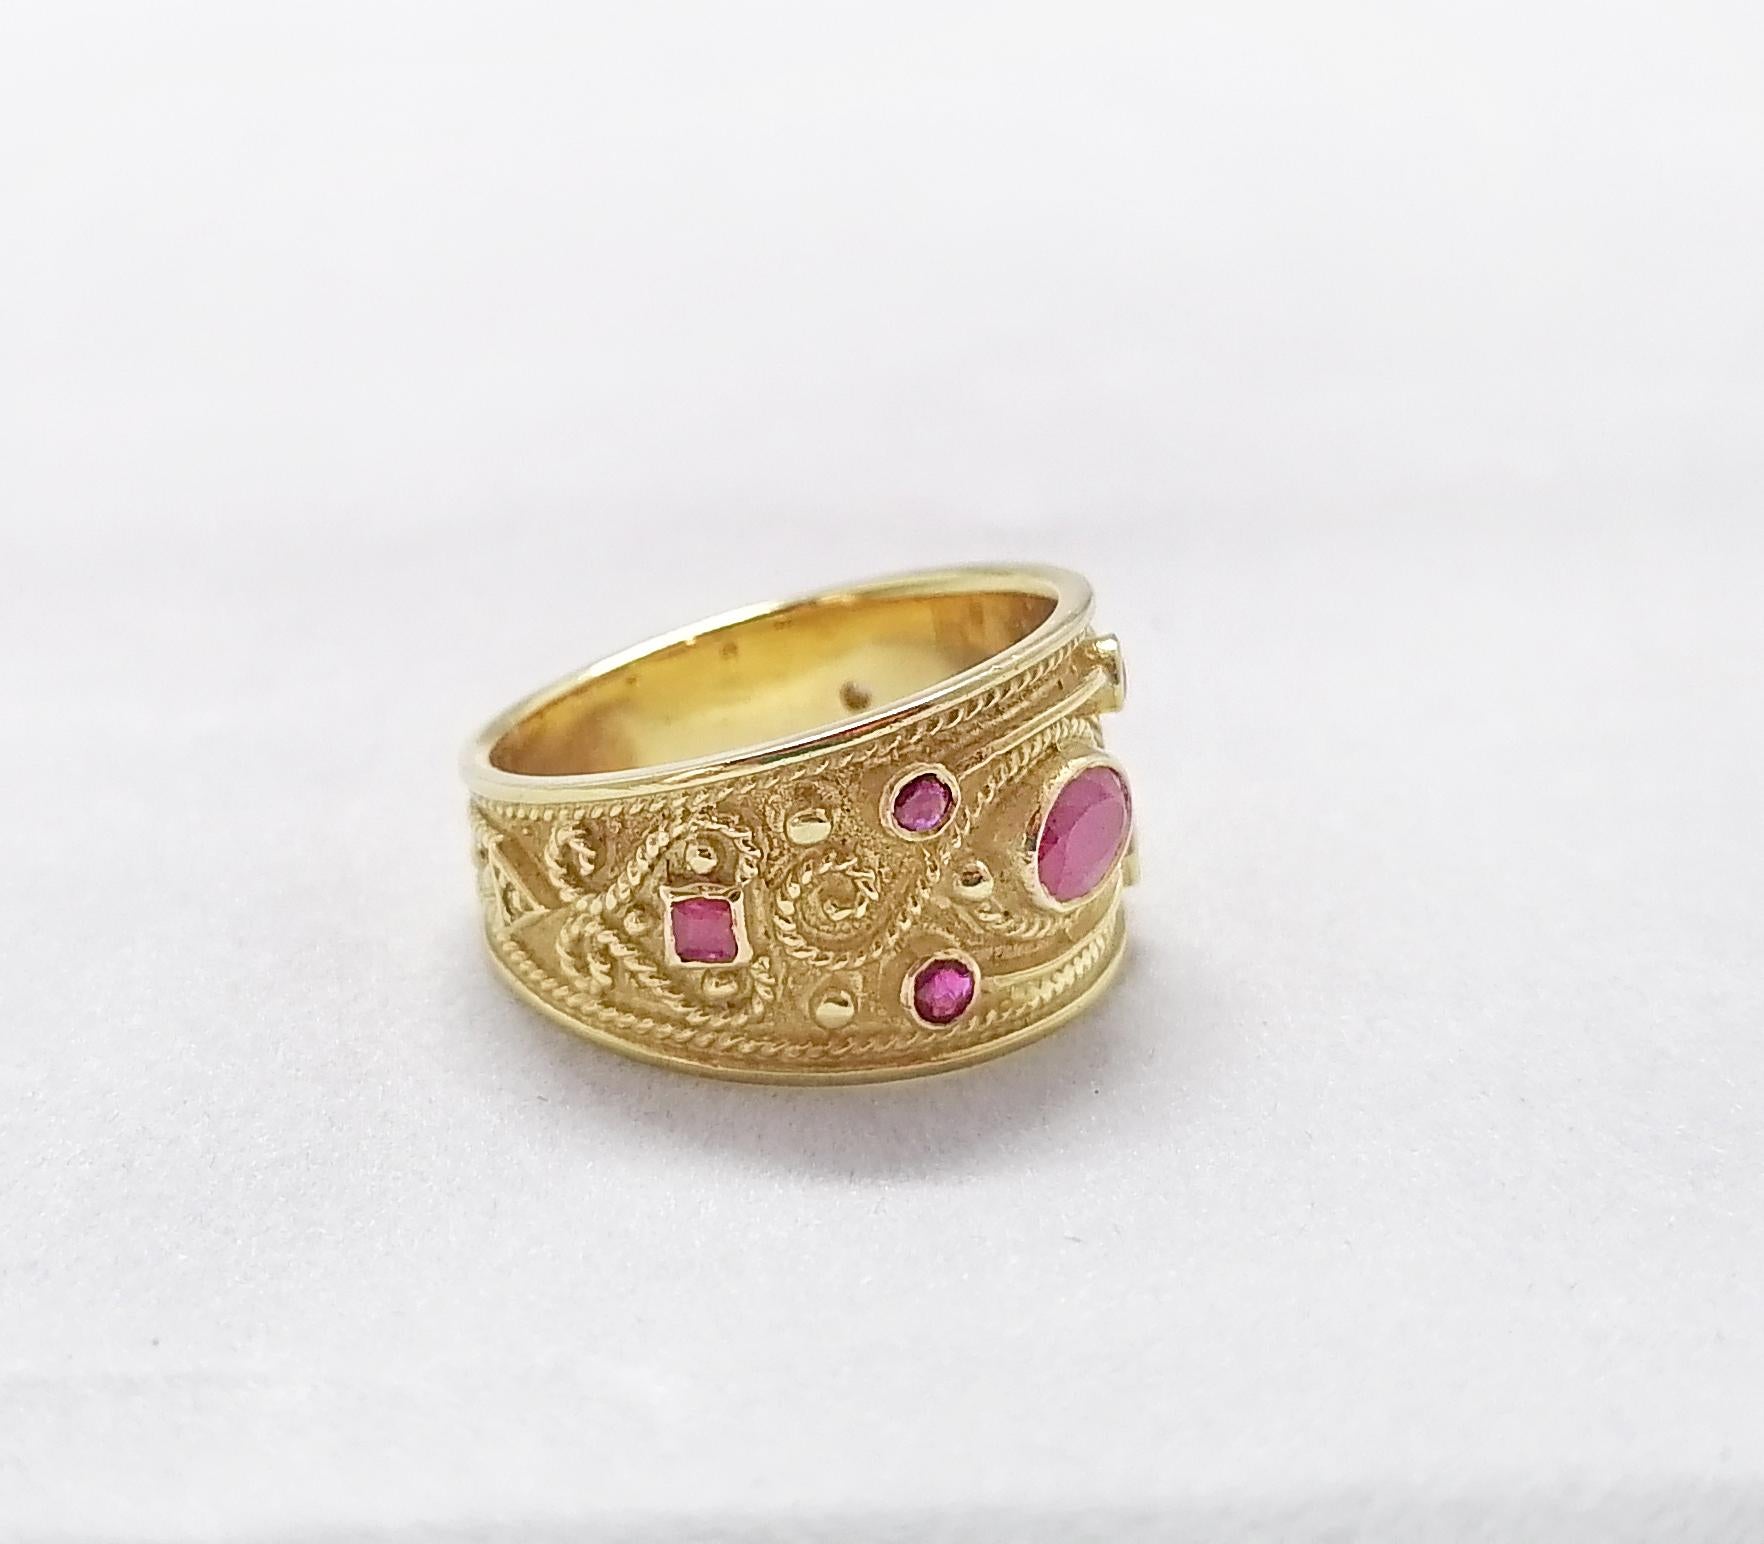 Dieser S.Georgios Designer-Ring aus 18 Karat Gelbgold ist komplett handgefertigt mit Perlengranulation und einem einzigartigen Samt-Hintergrund. Dieser wunderschöne Ring zeigt in der Mitte einen natürlichen Rubin im Ovalschliff, umrahmt von 6